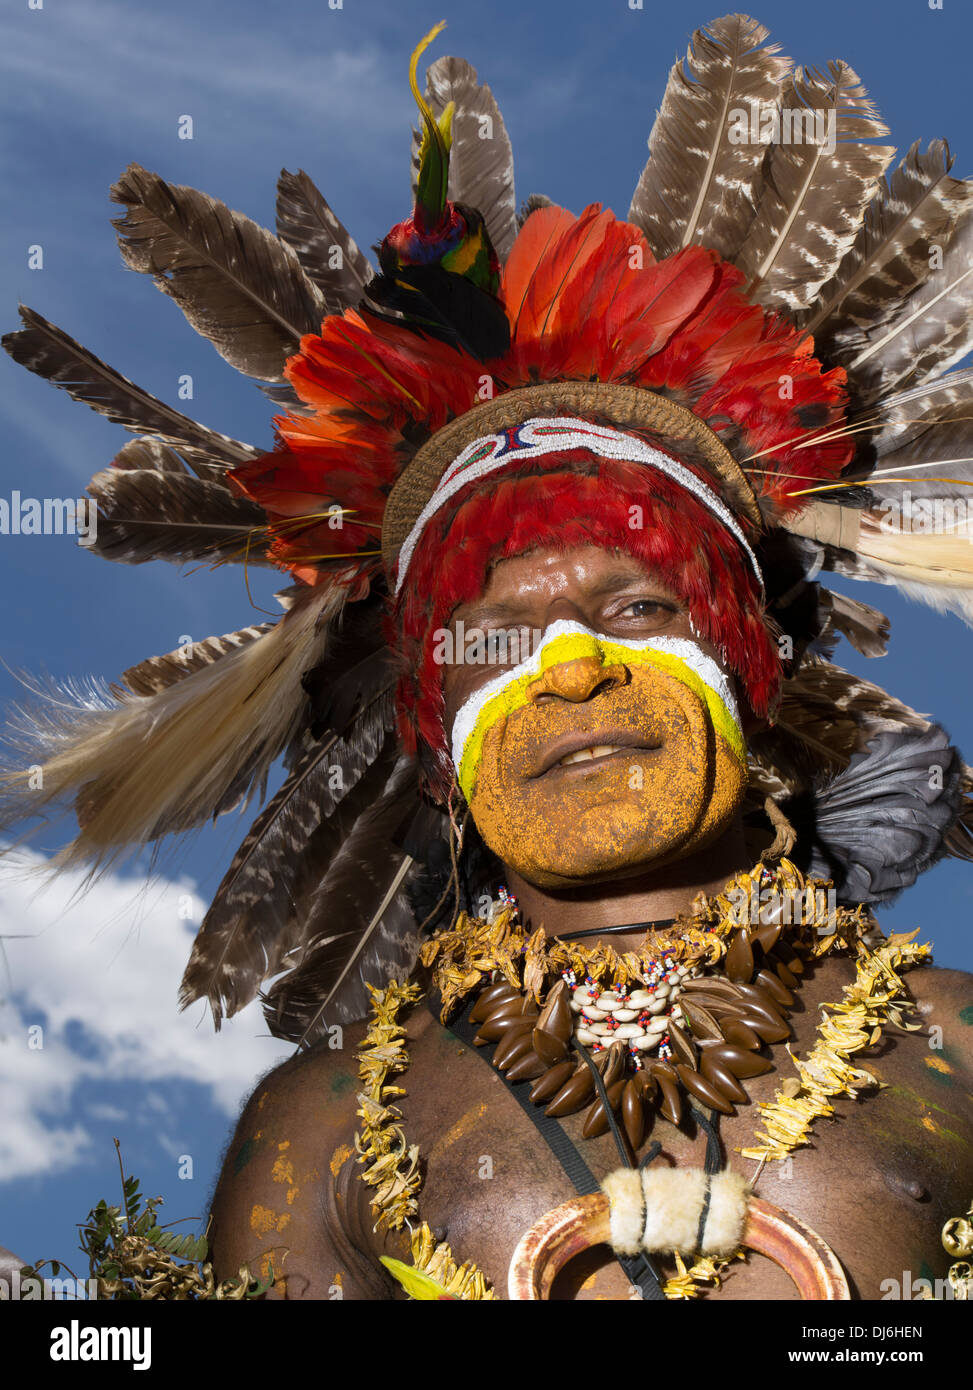 L'homme Tribal avec la peinture pour le visage et une coiffure à plumes à Goroka Show singsing, festival de Goroka, Papouasie Nouvelle Guinée Banque D'Images